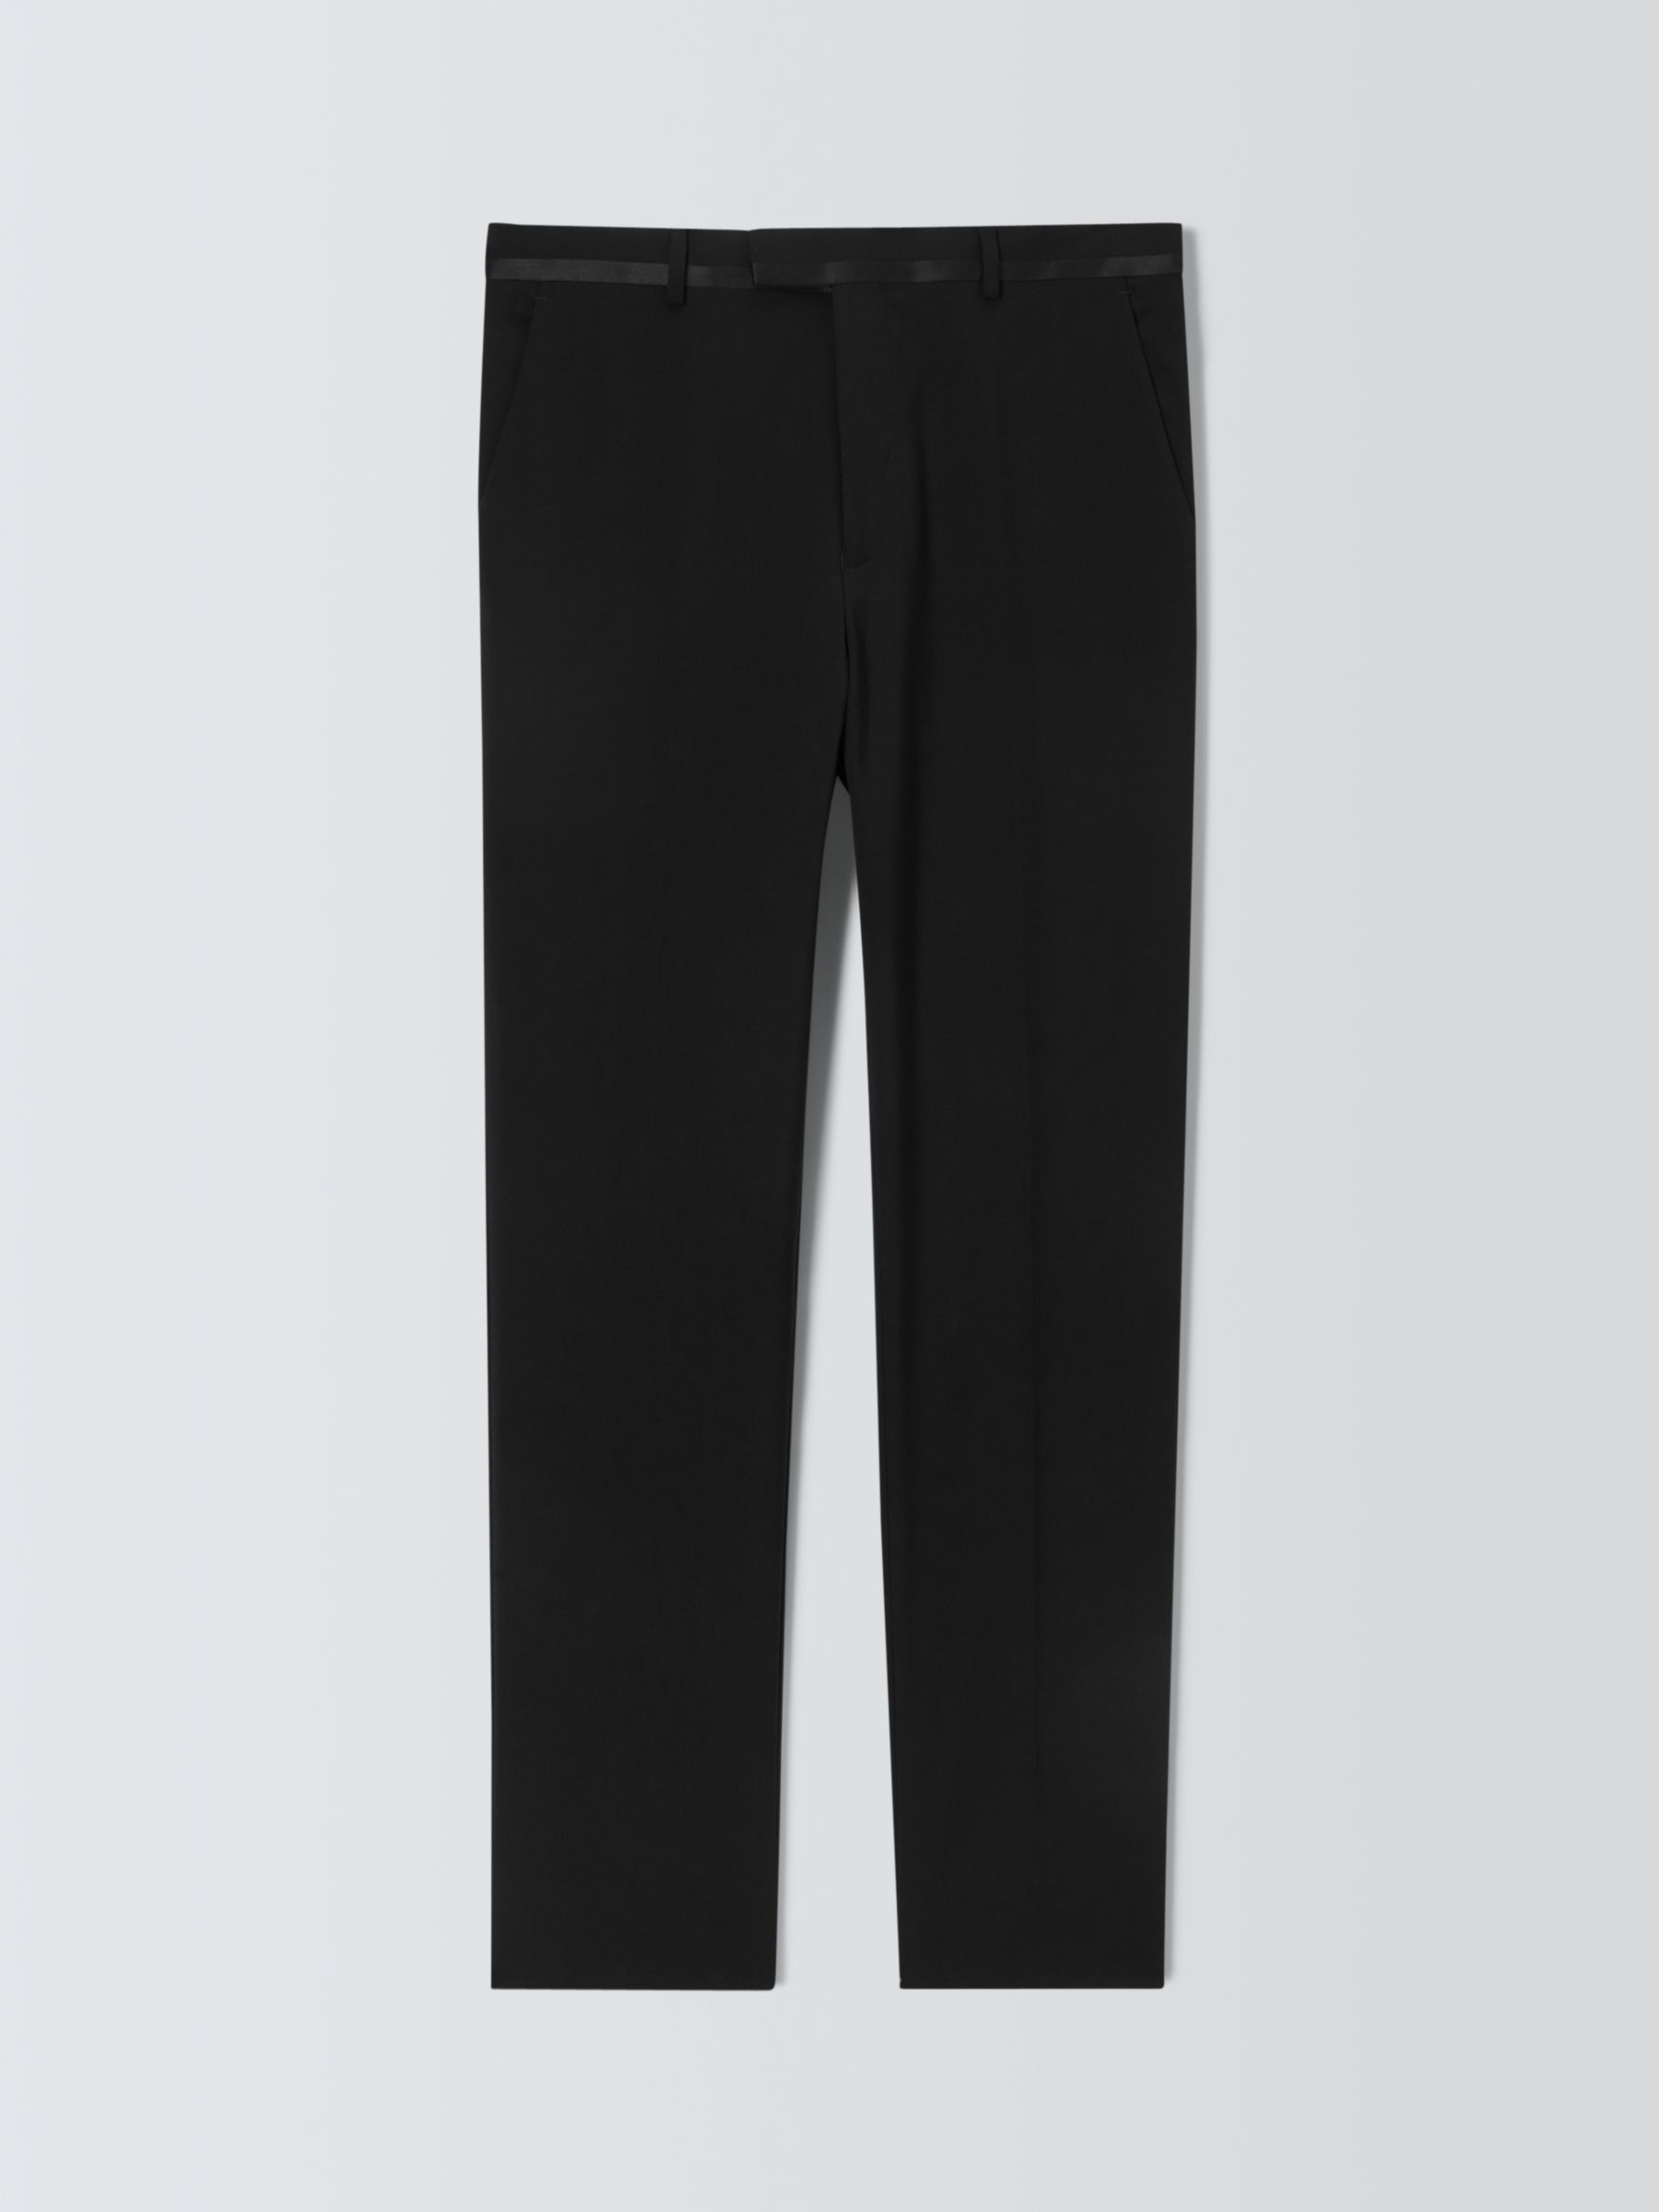 Kin Plain Slim Fit Dinner Suit Trousers, Black, 30R